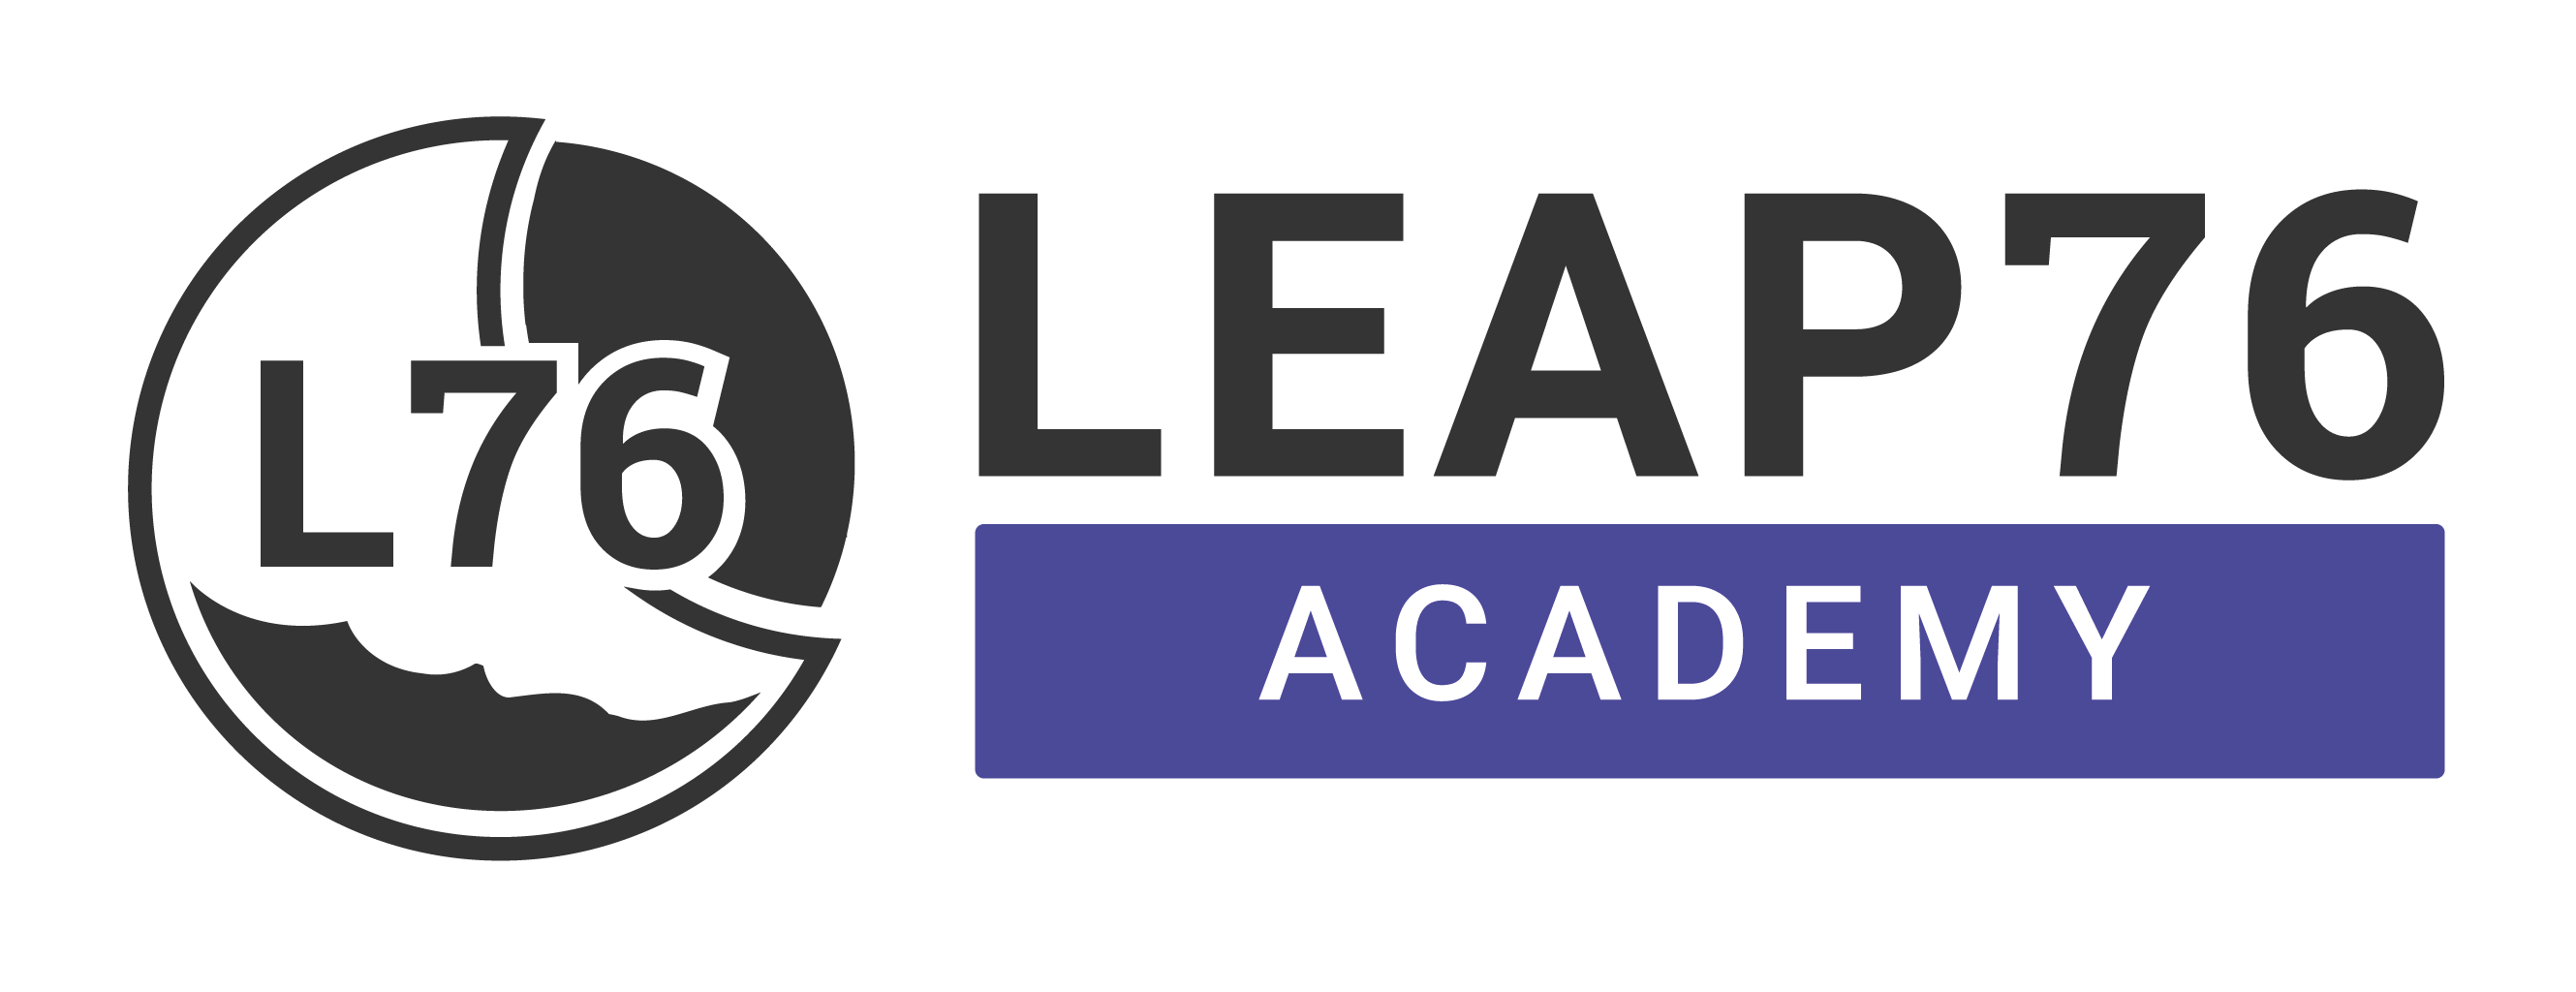 Leap76 Academy Ltd